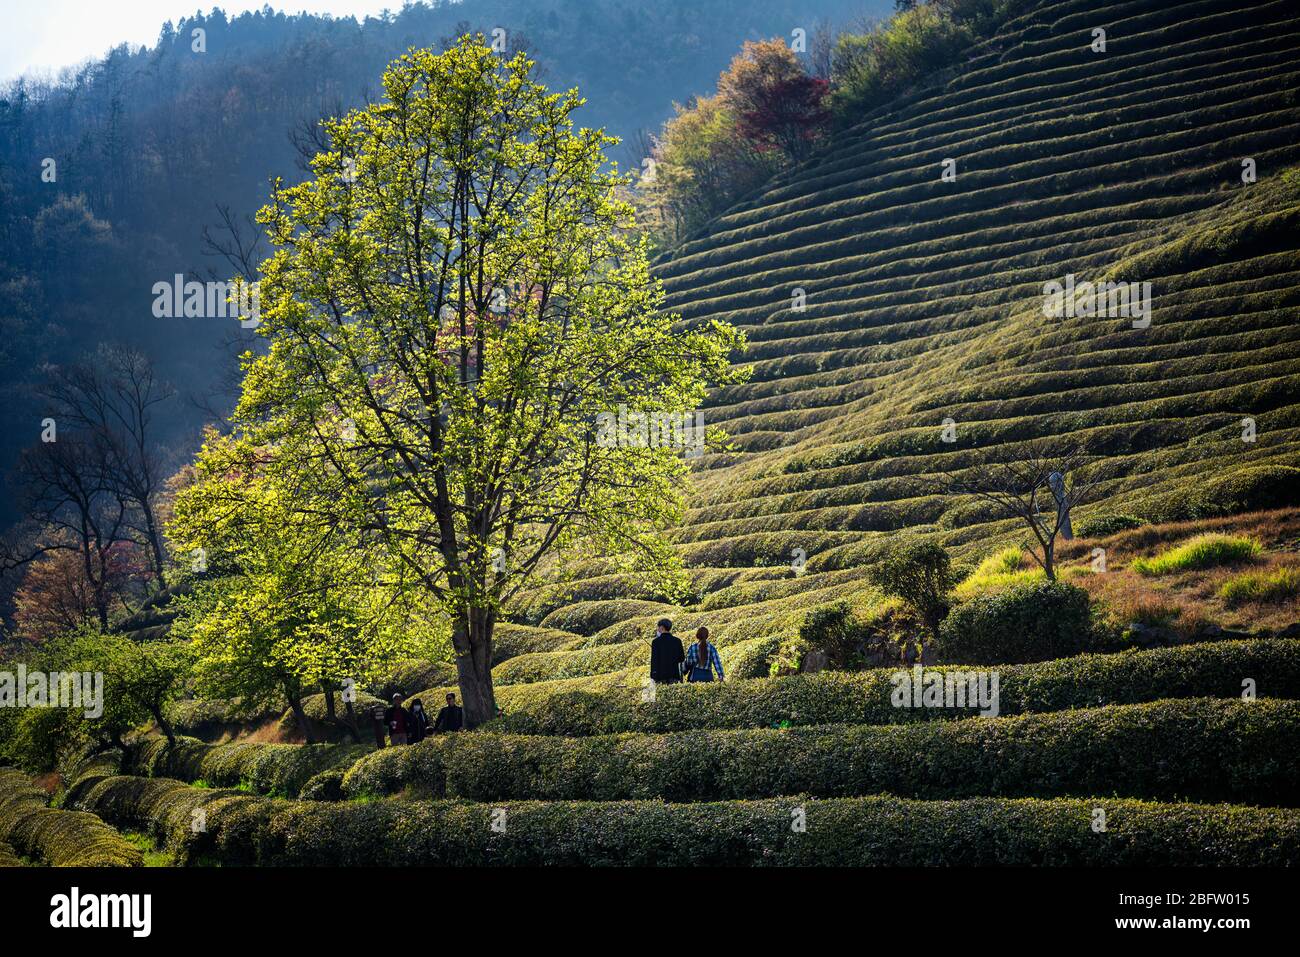 Contea di Beosong, Corea del Sud - 18 APRILE 2020: La contea di Boseong ospita i più alti campi di tè in Corea, rinomati per la qualità del verde Foto Stock